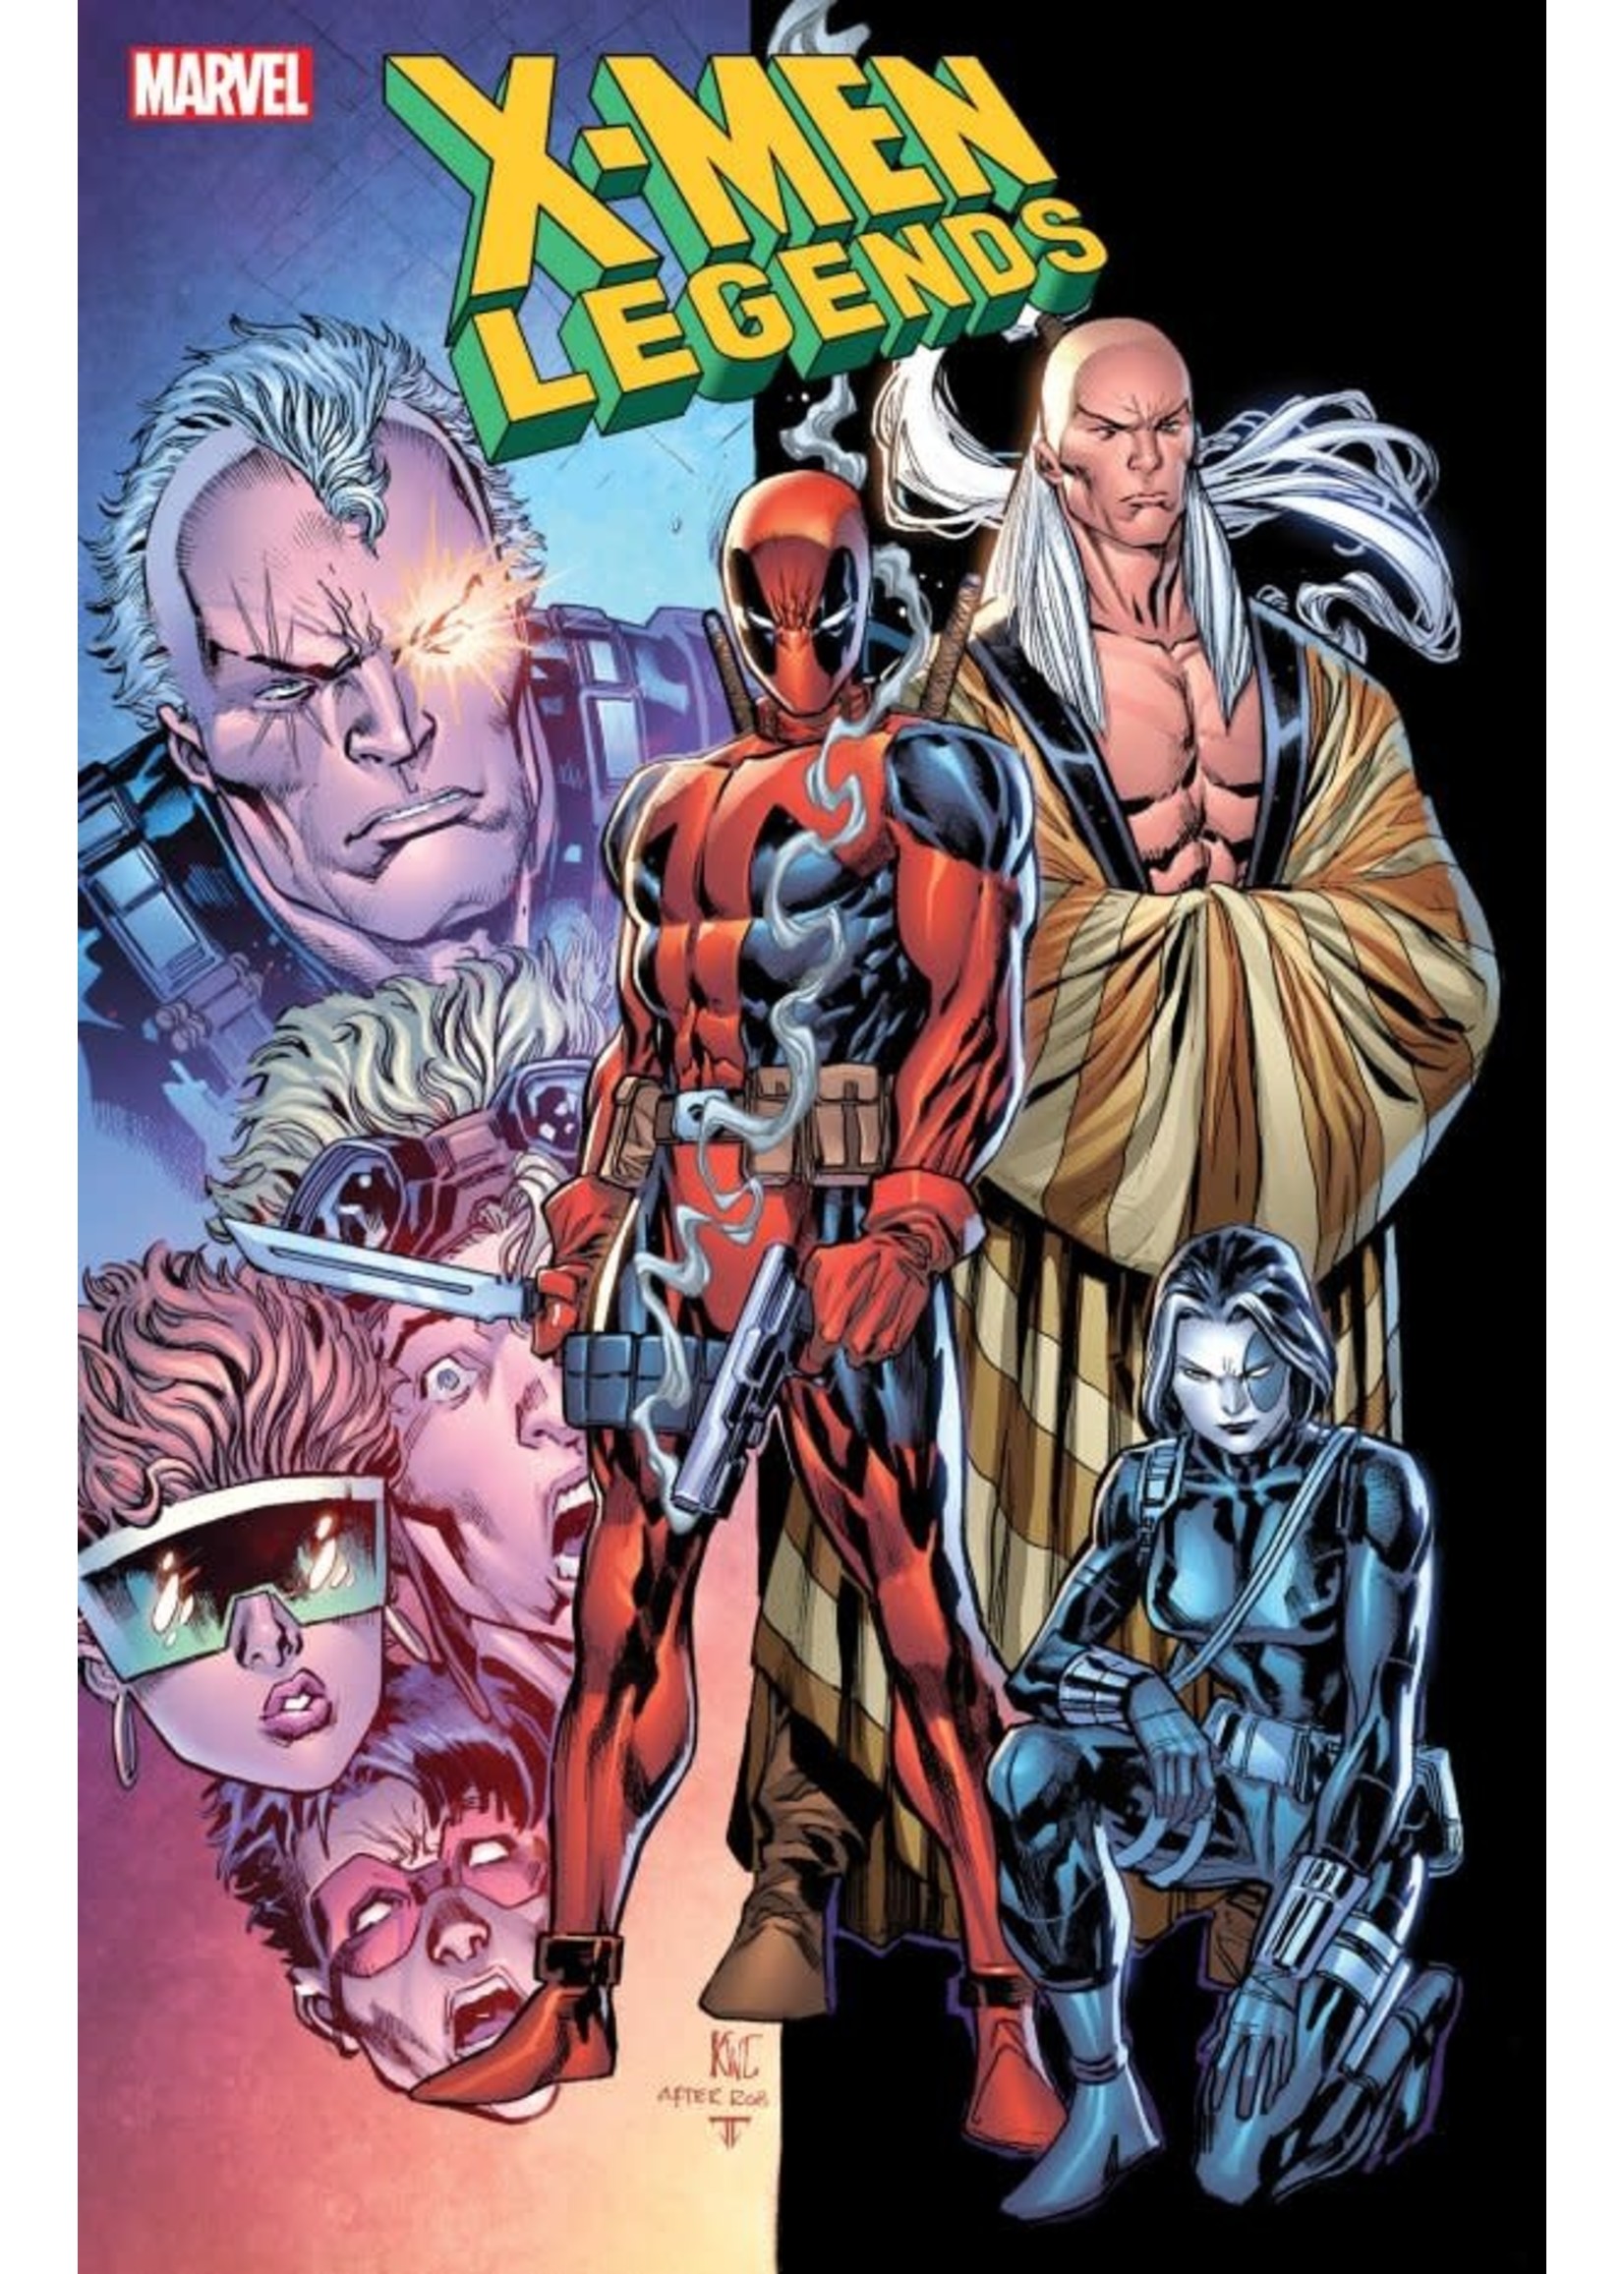 MARVEL COMICS X-MEN LEGENDS #11 LASHLEY CLASSIC HOMAGE VARIANT